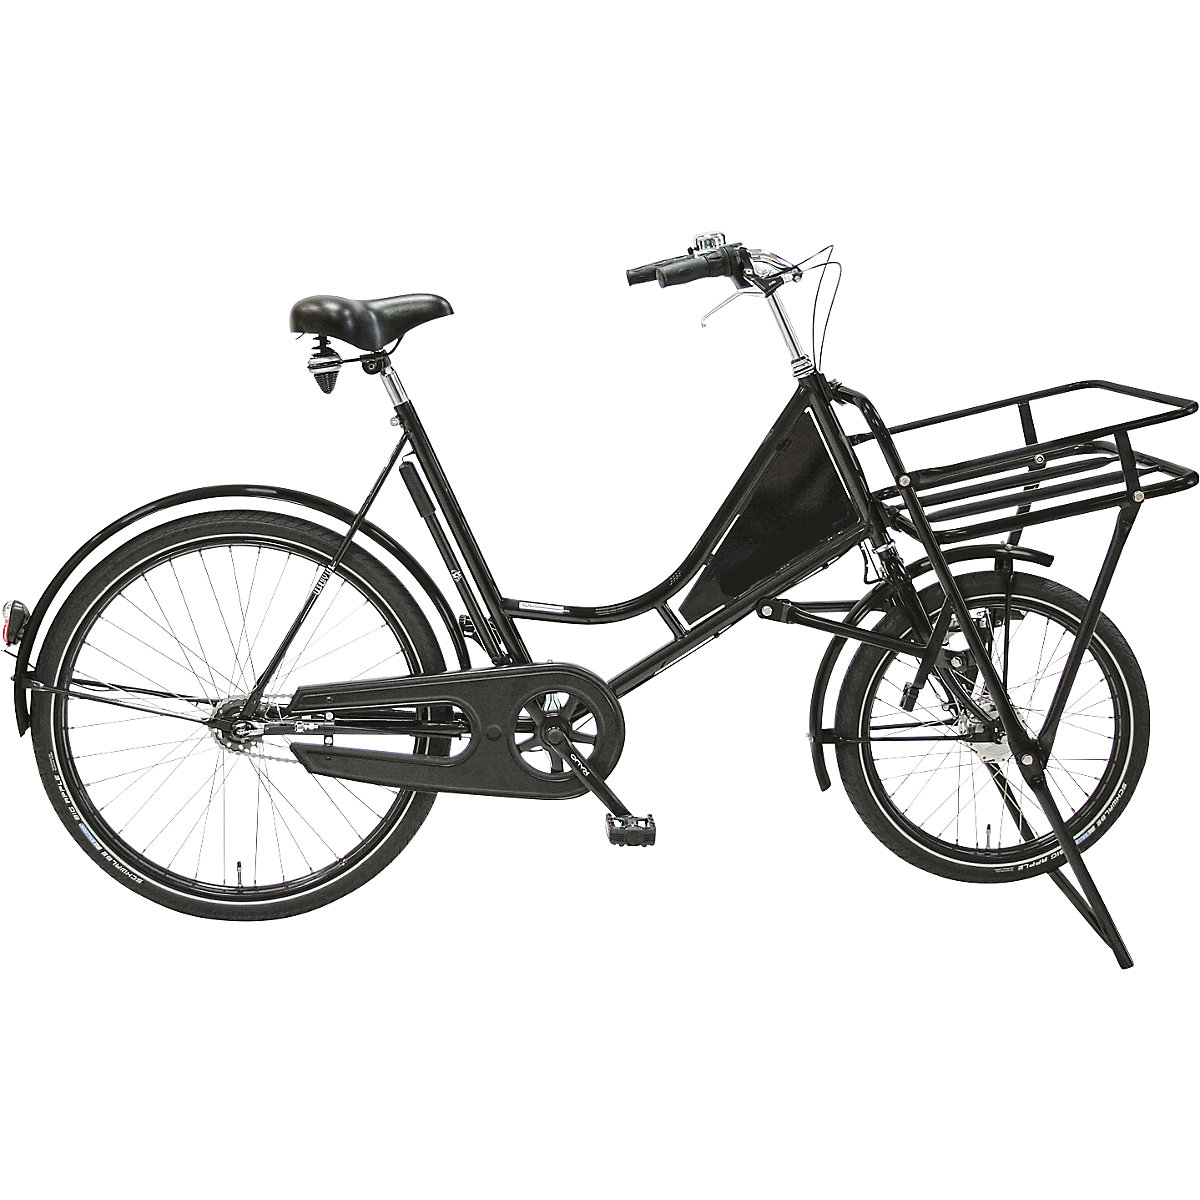 Bicicleta para cargas pesadas CLASSIC, bicicleta para o transporte dentro da empresa, capacidade de carga 150 kg, a partir de 5 unid.-1